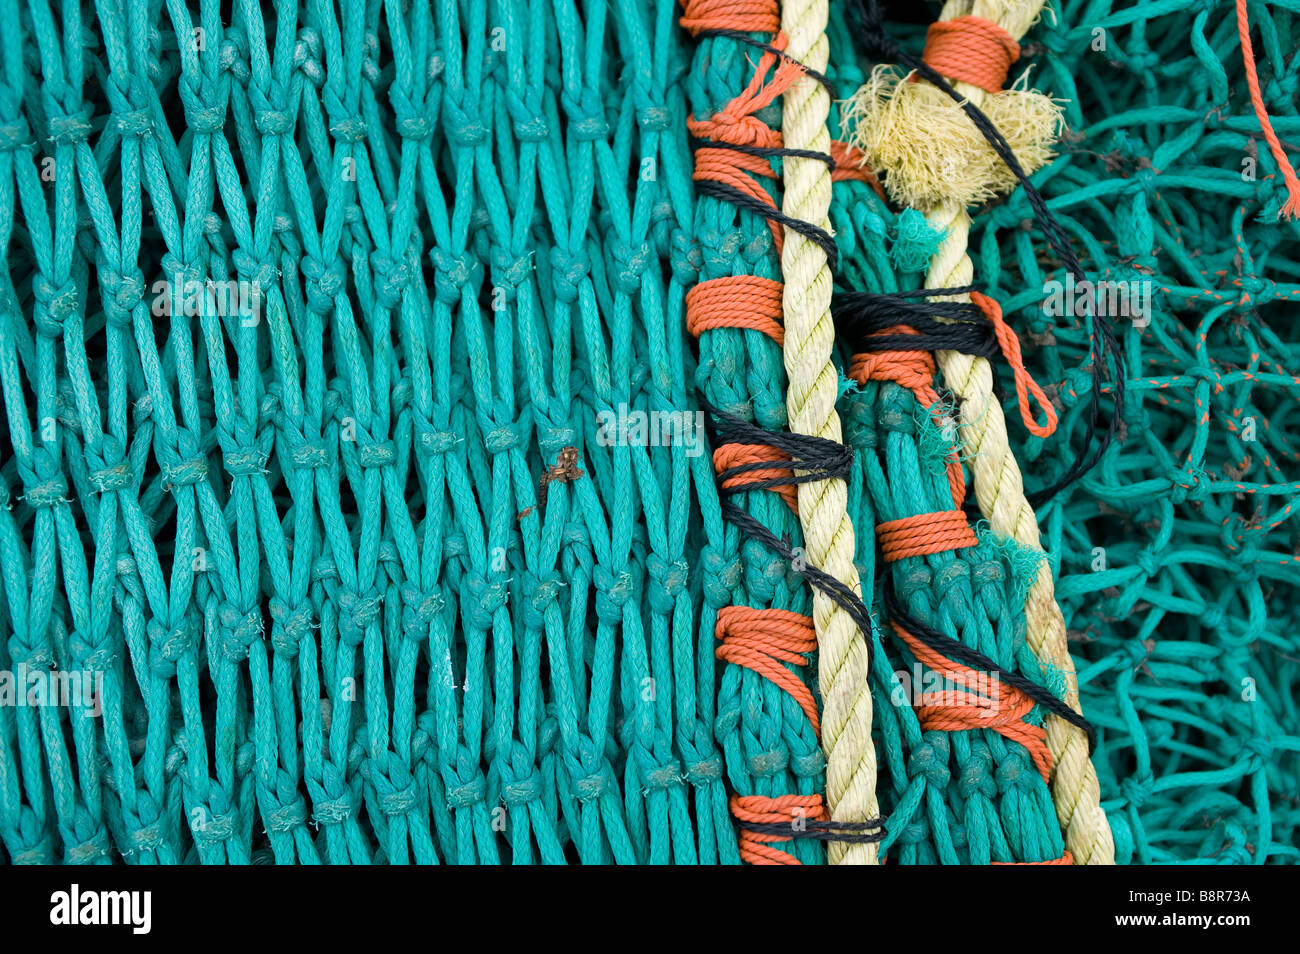 Una de las redes de pesca, cinturón verde amarillo naranja resumen cerca detalles en una red de pesca Foto de stock